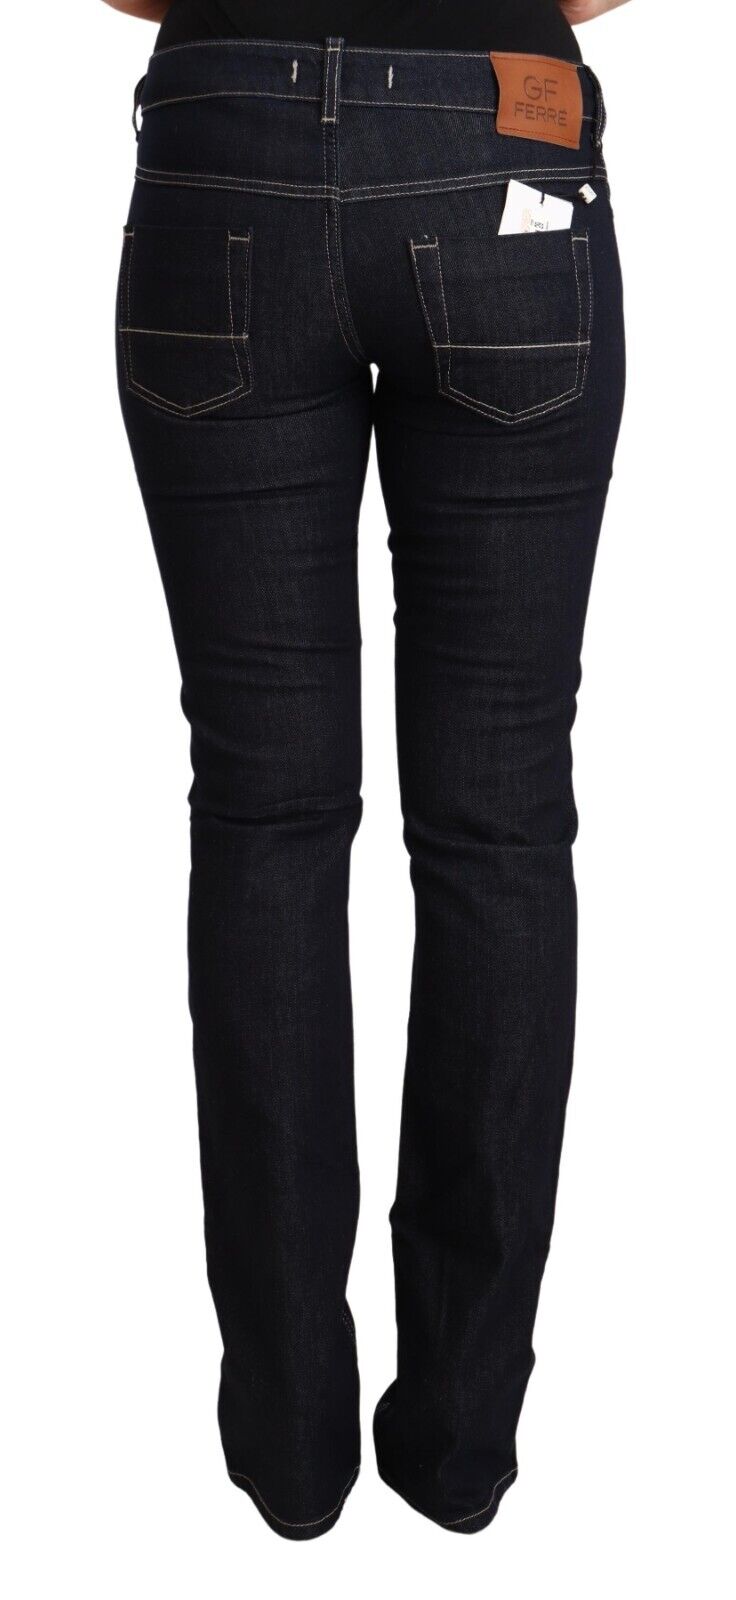 GF Ferre Black Cotton Stretch Low Waist Skinny Denim Jeans - Fizigo